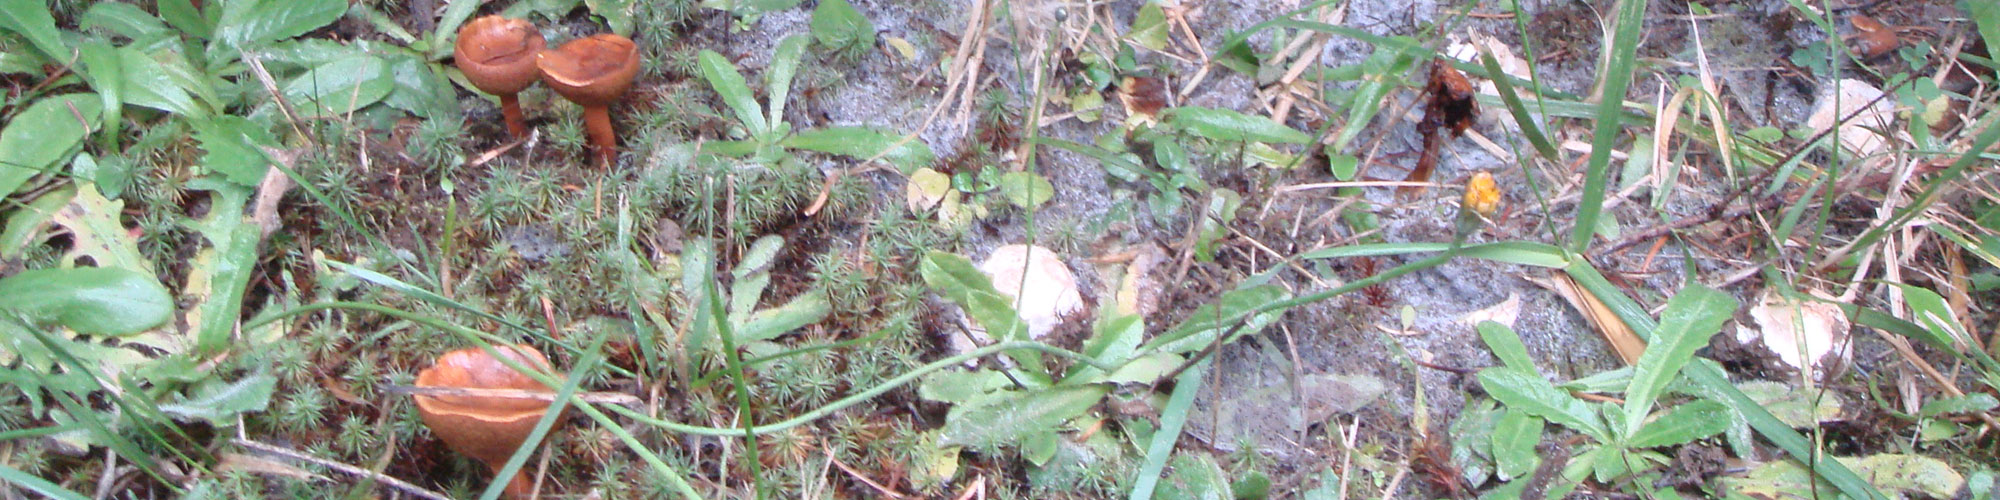 mushroom7